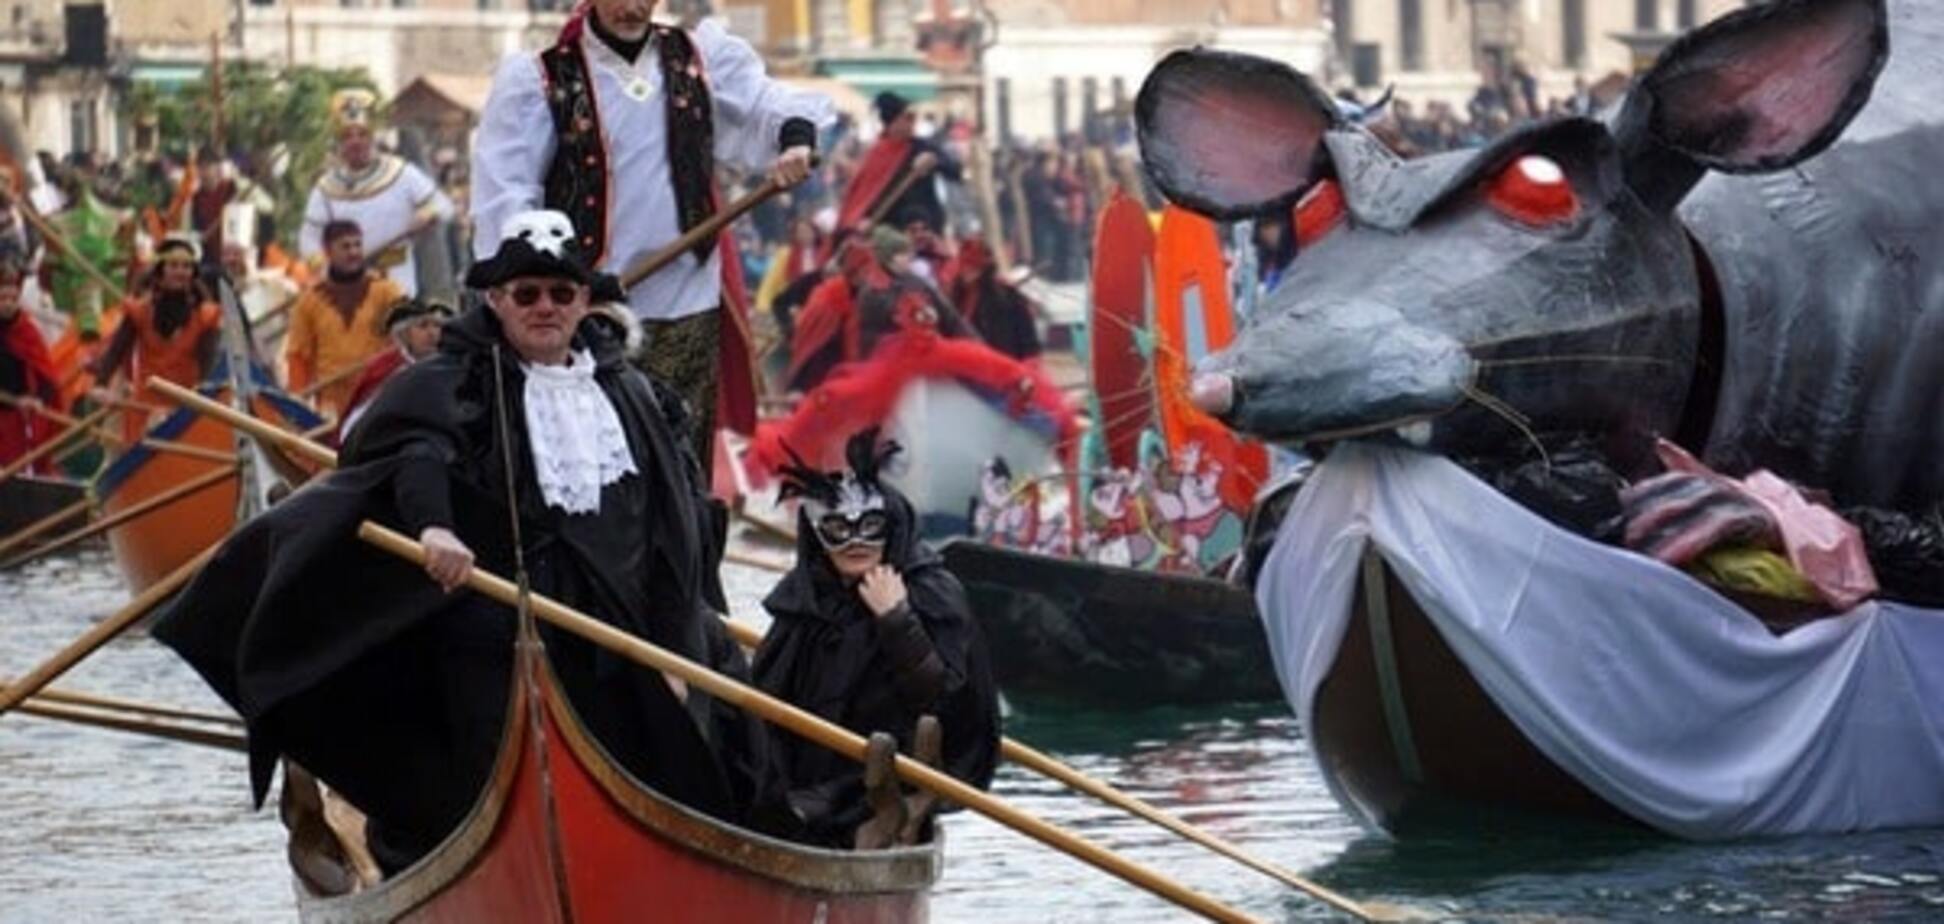 Карнавал в Венеции: яркие фото красочного итальянского праздника